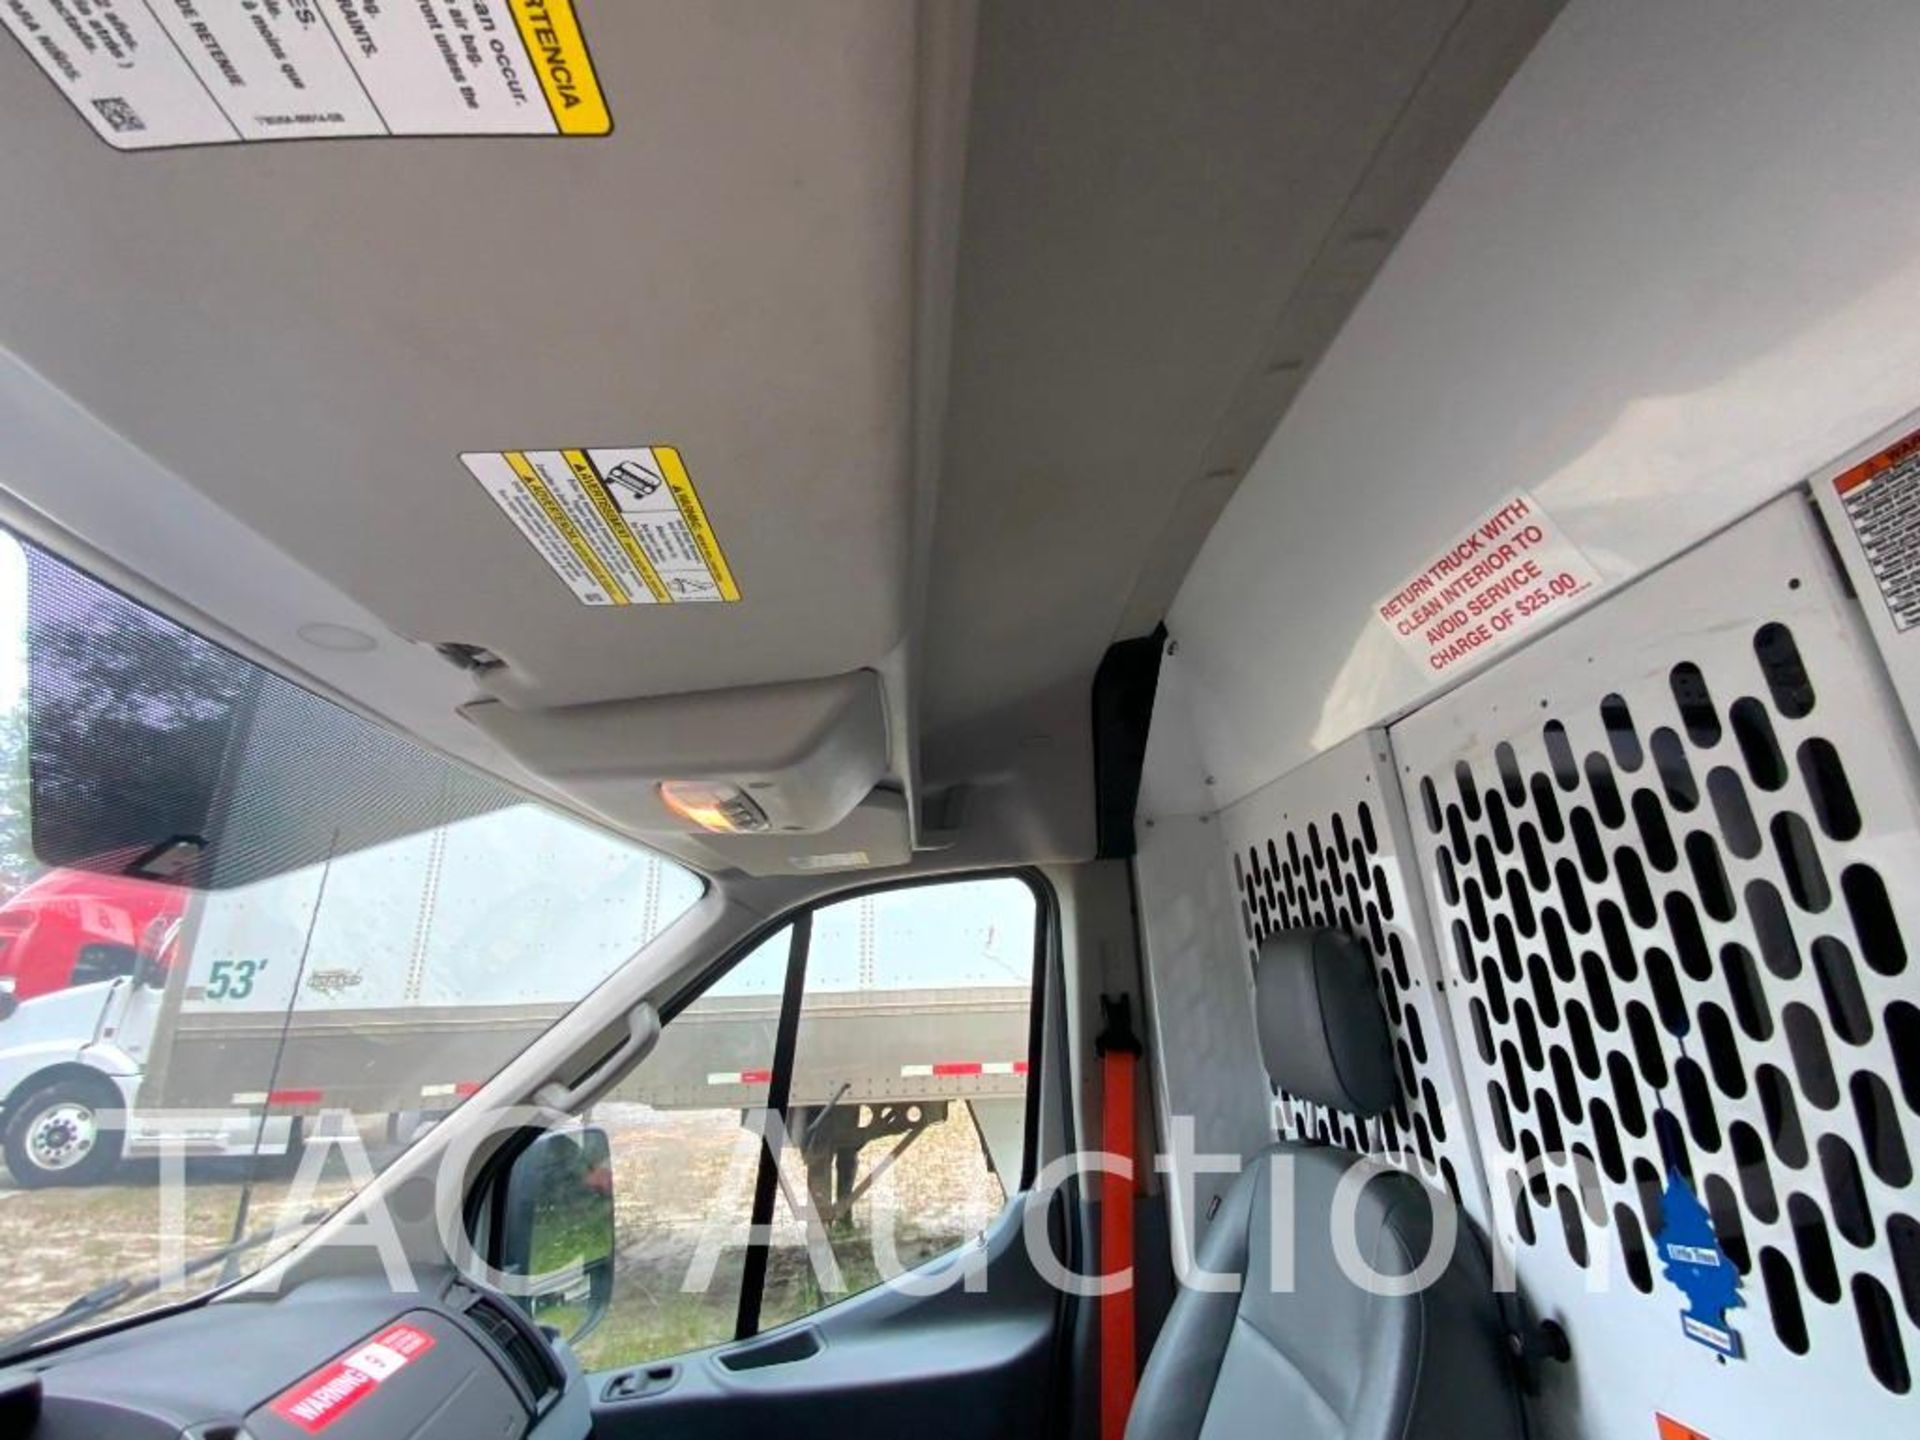 2019 Ford Transit 150 Cargo Van - Image 12 of 50